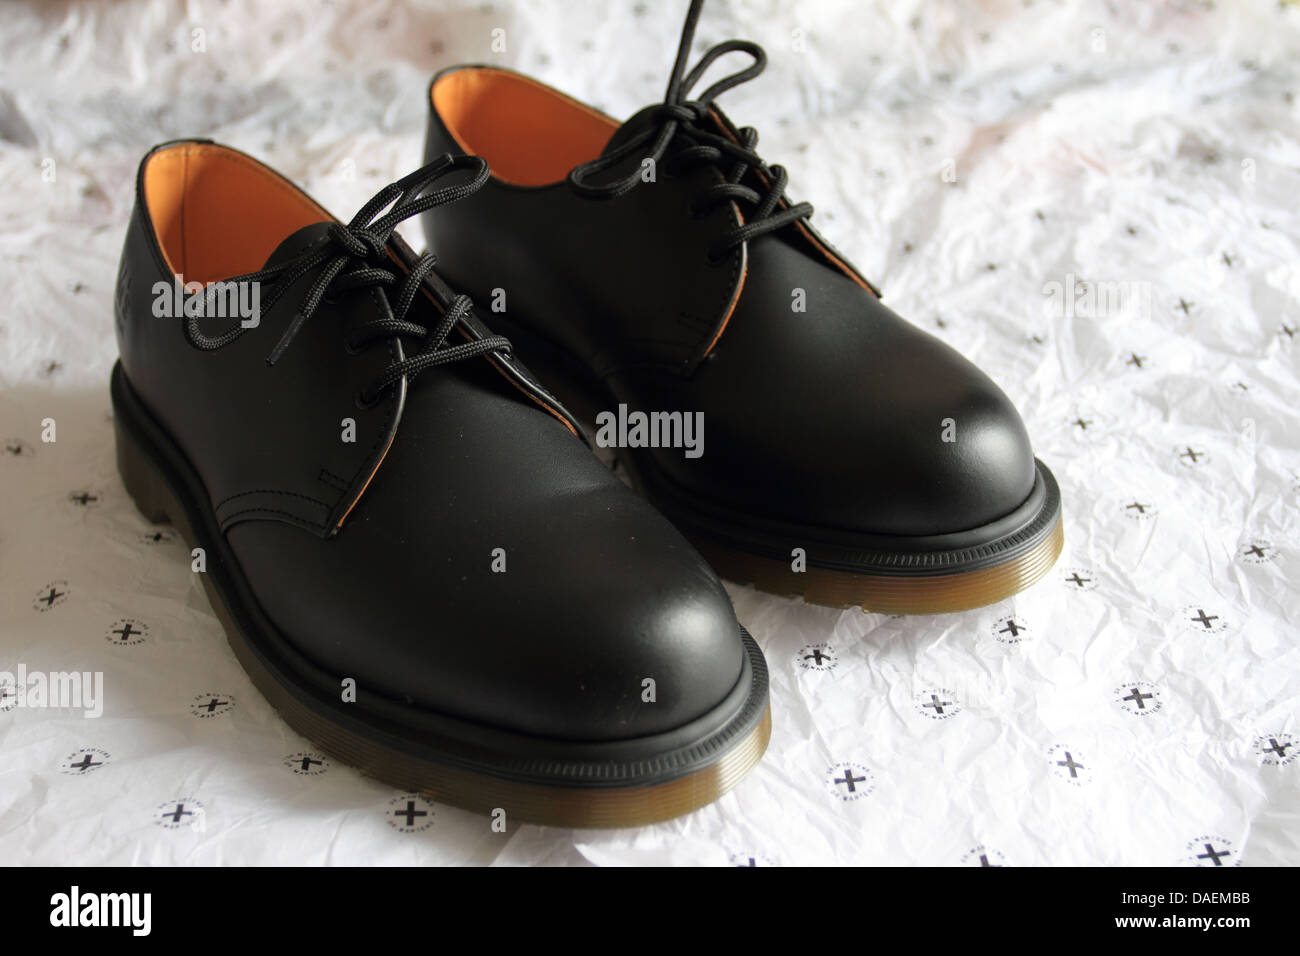 1461 Dr. Martens scarpe, Air wair, scarpe nere, Norfolk, Regno Unito Foto Stock